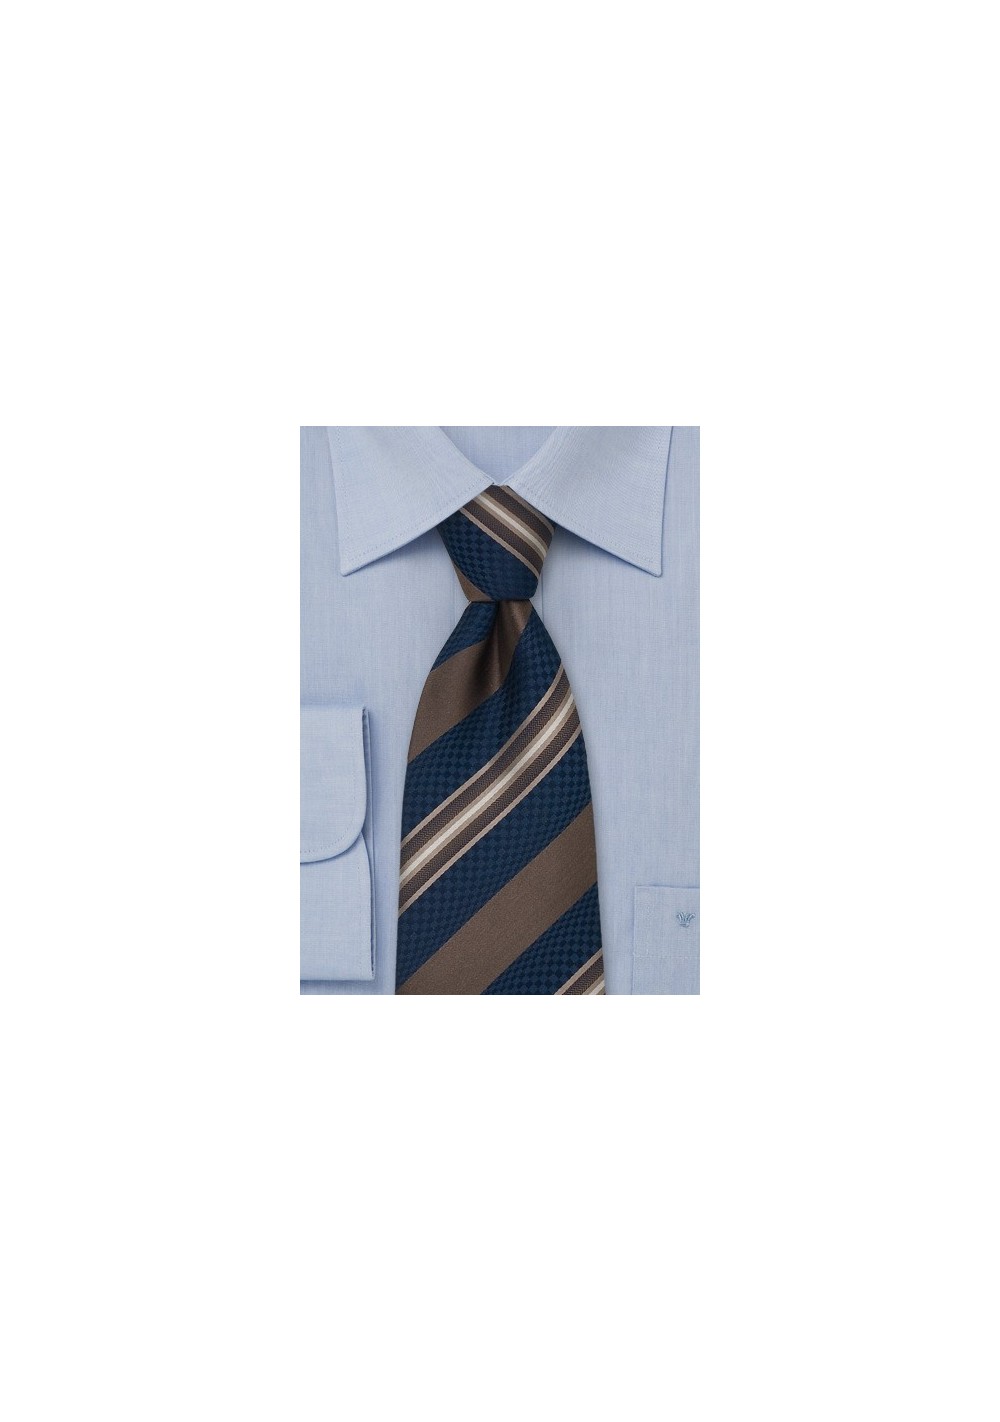 Navy & Brown Striped Silk Tie